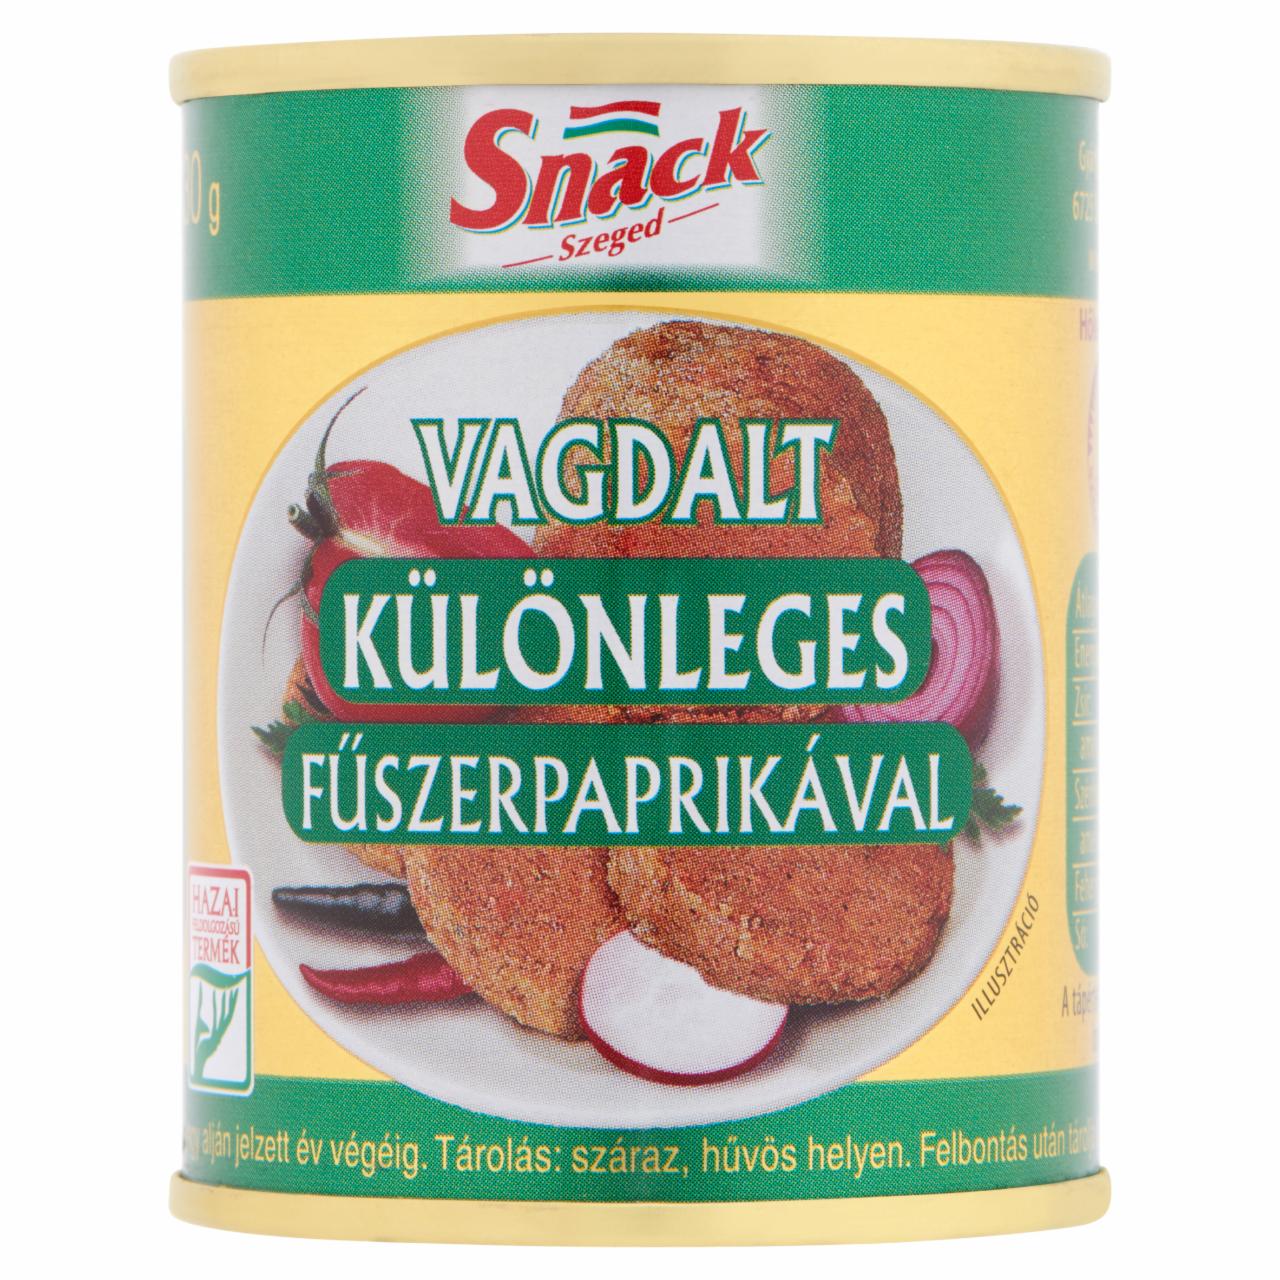 Képek - Snack Szeged vagdalt különleges fűszerpaprikával 130 g